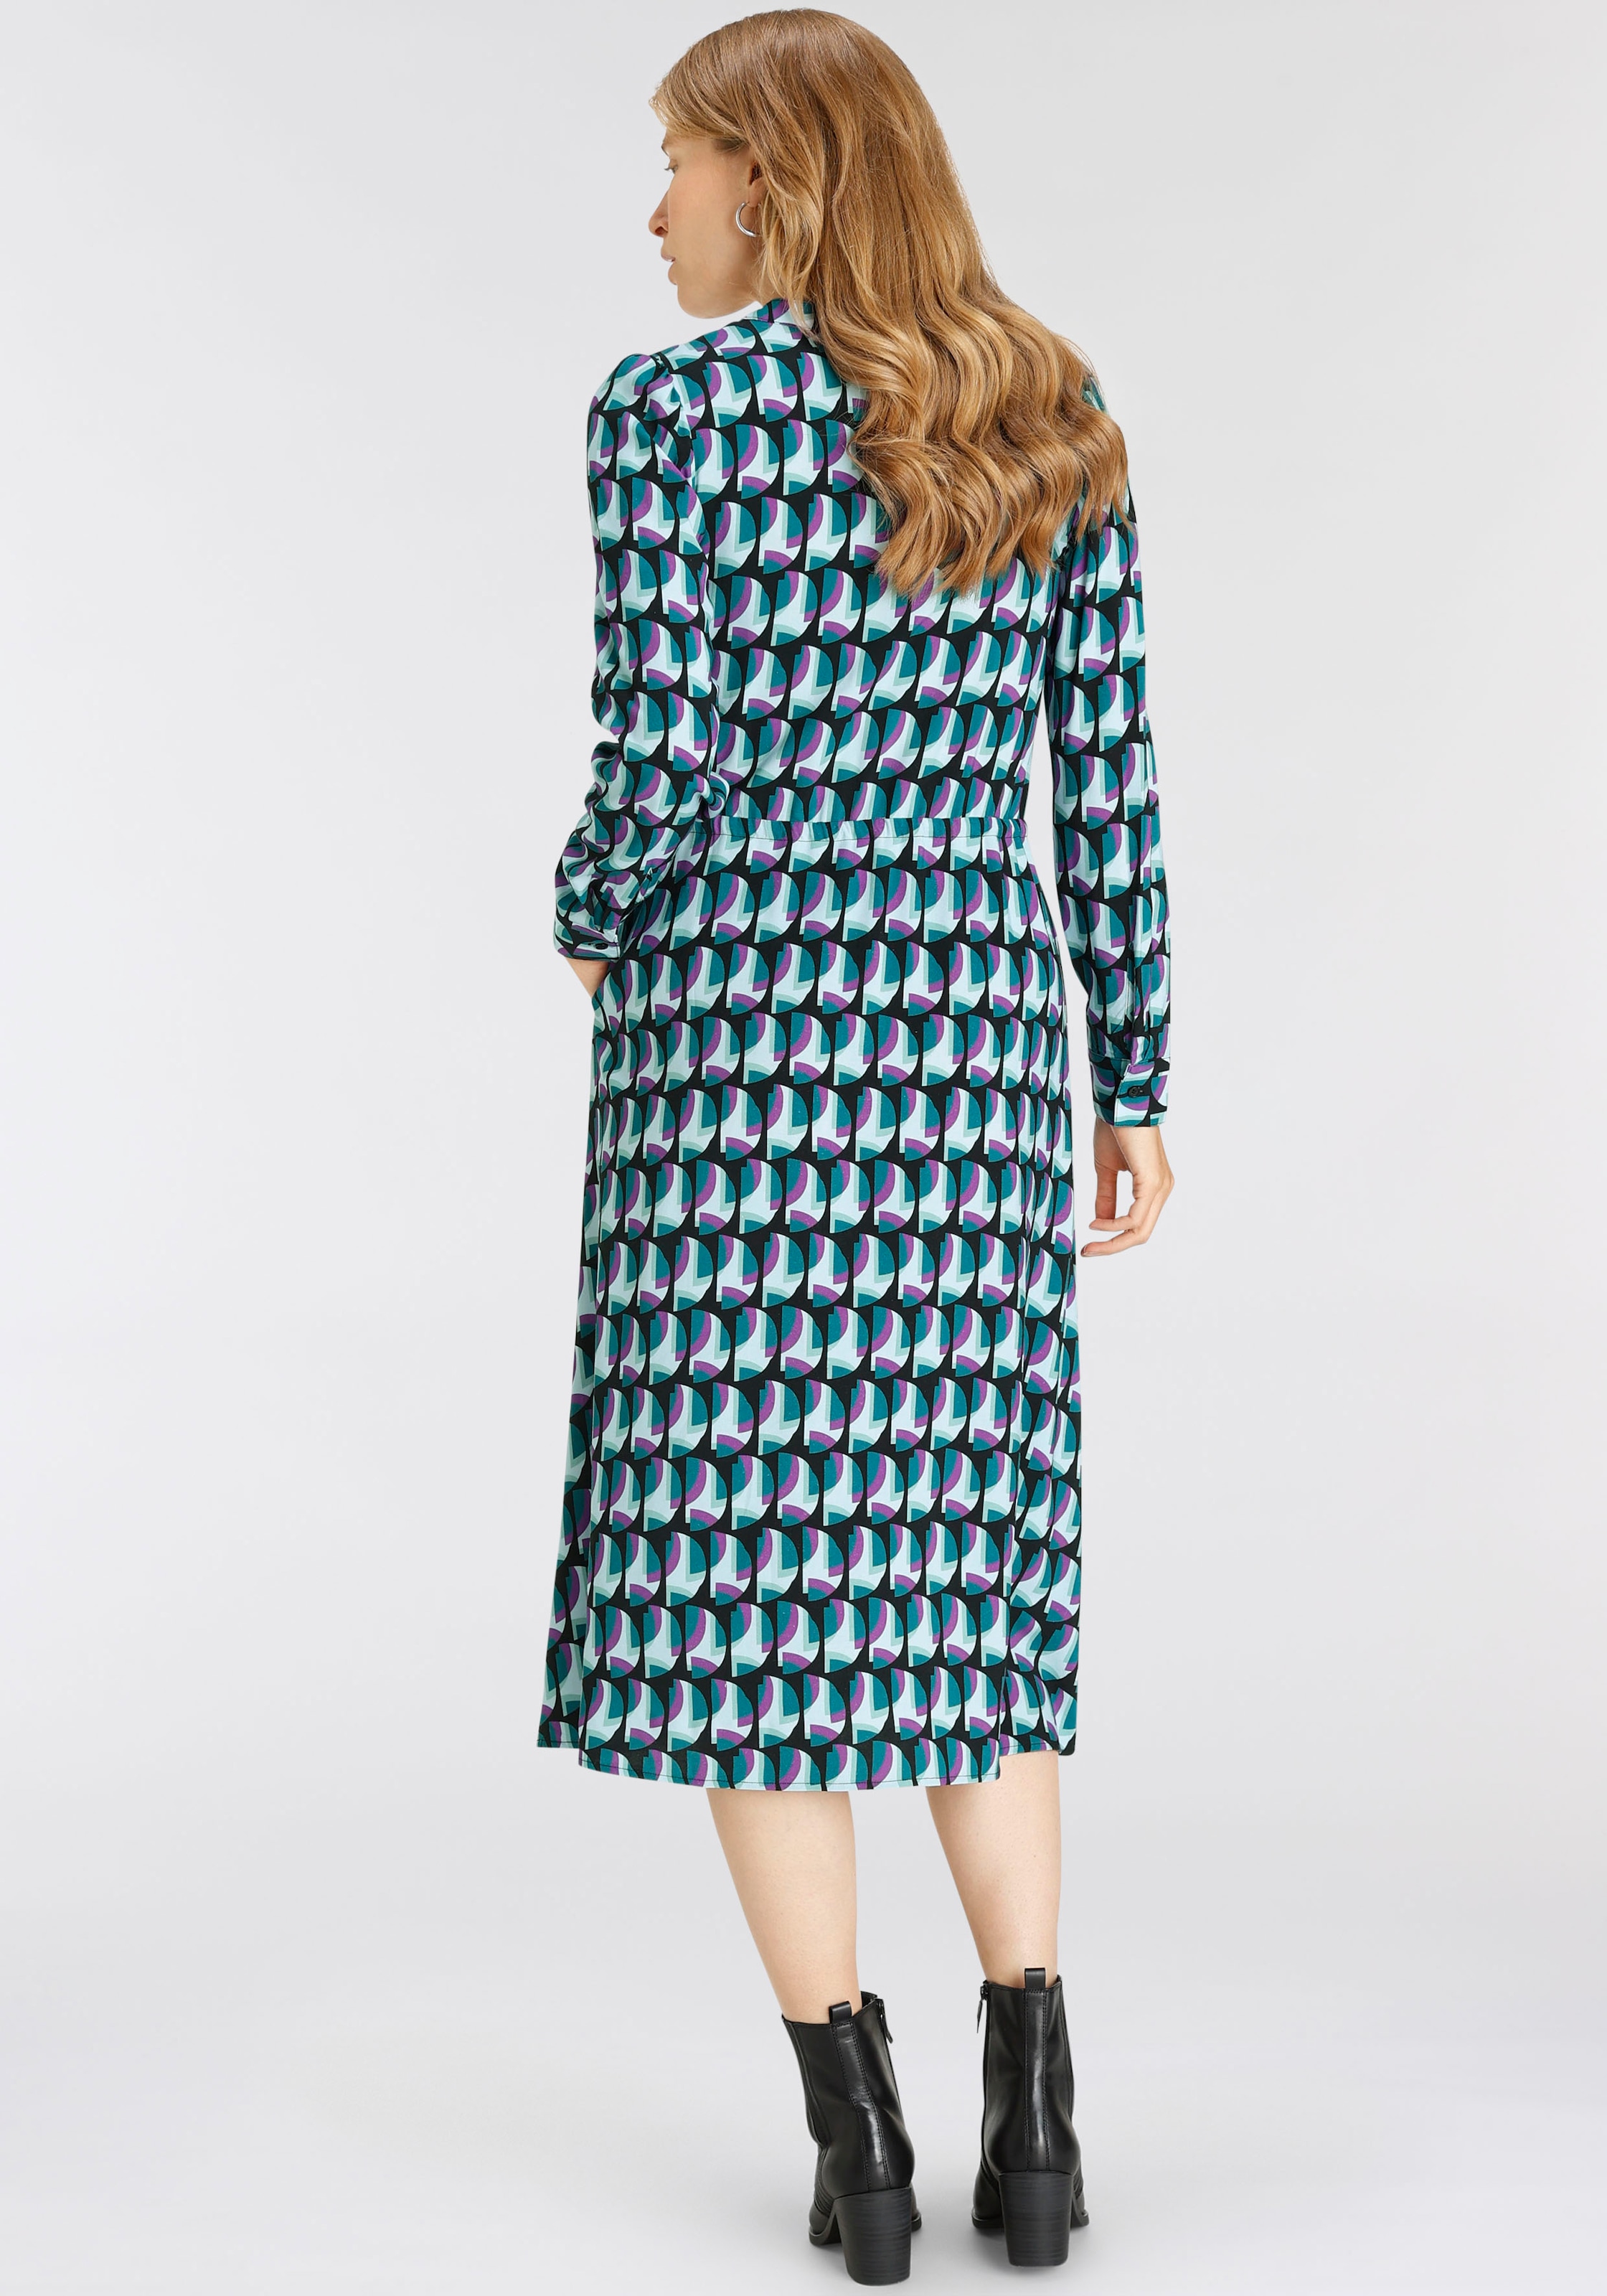 HECHTER PARIS Hemdblusenkleid, mit elegantem Allover-Print bei ♕